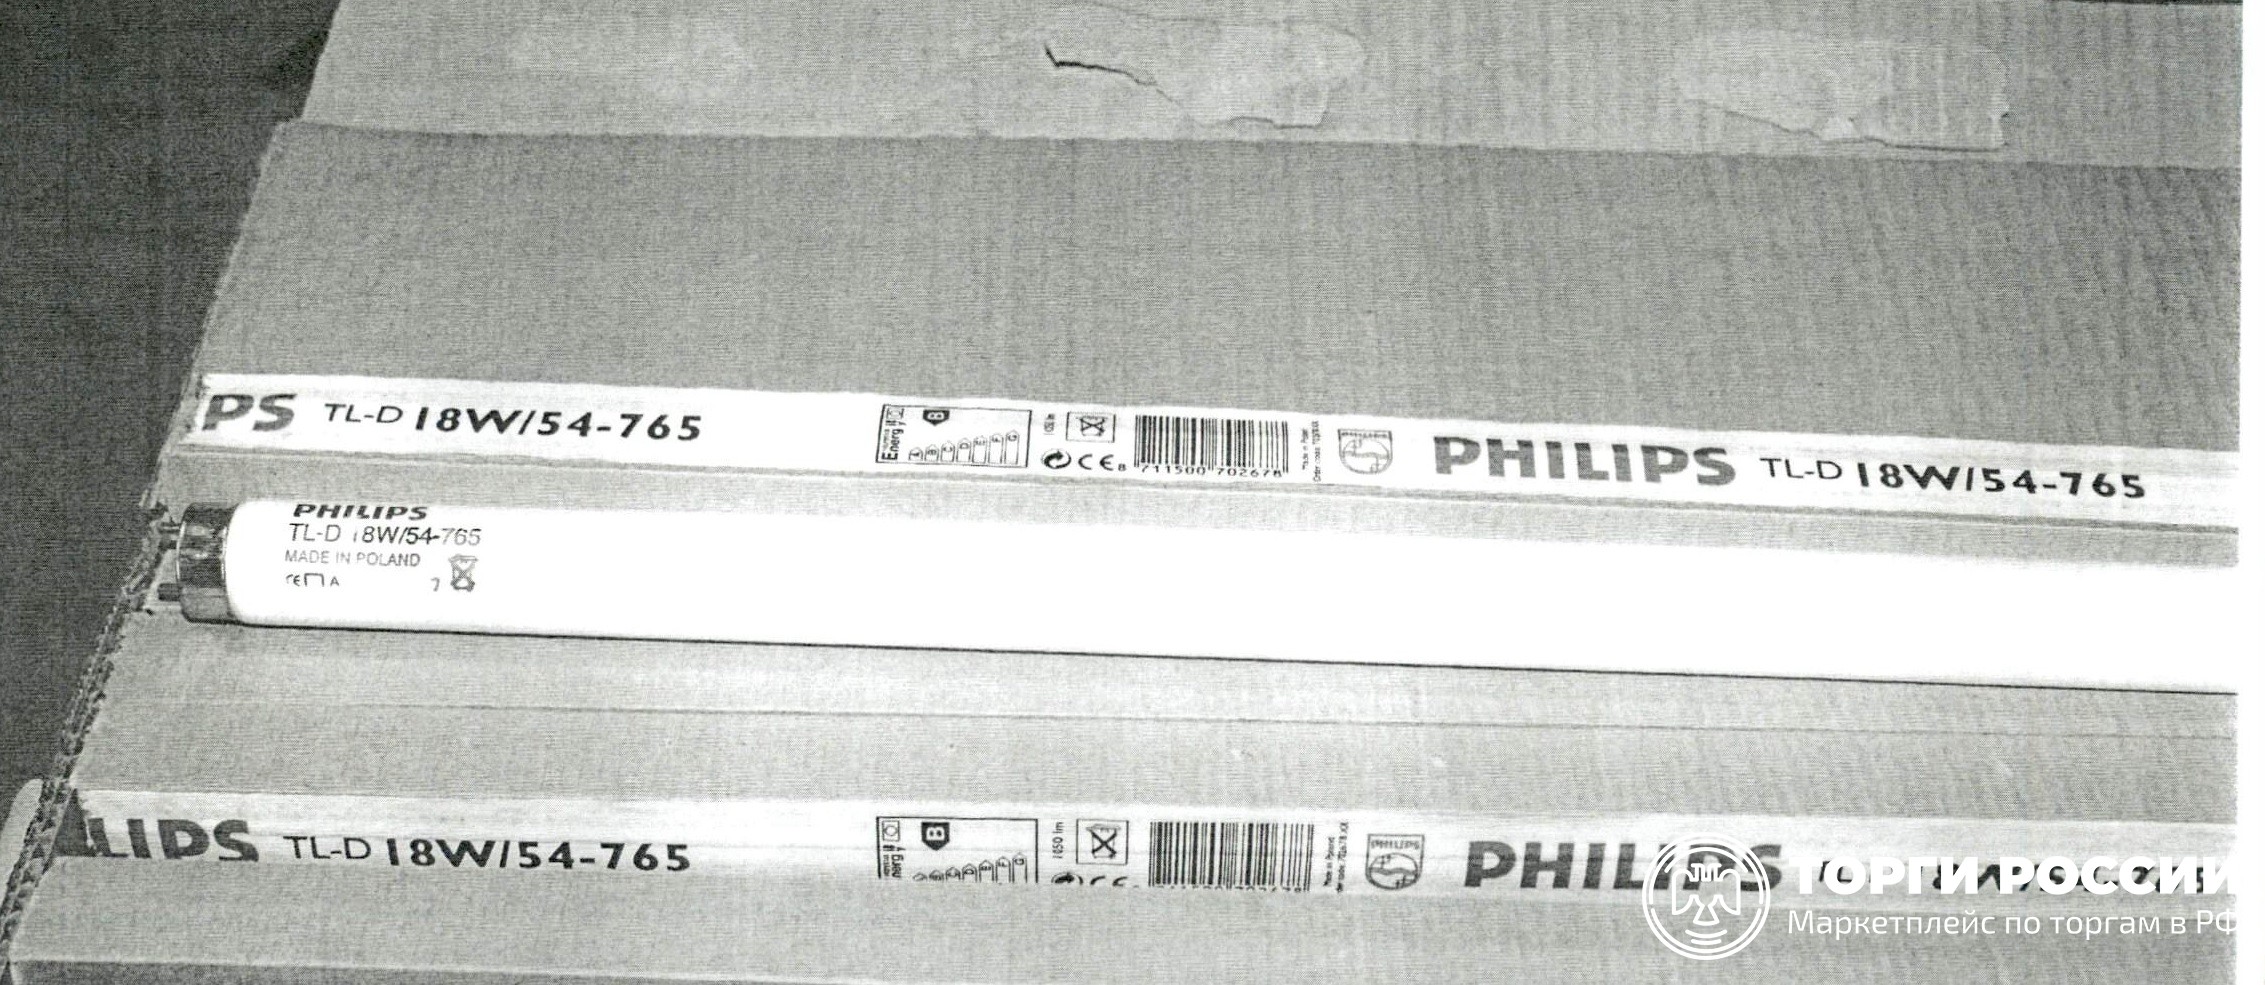 Philips tl d 54 765. Люминесцентные лампы с термокатодом. Лампы газоразрядные люминесцентные с термокатодом. Газоразрядые люминисцентные лампы"", с термокатодом. Термокатод в лампе.